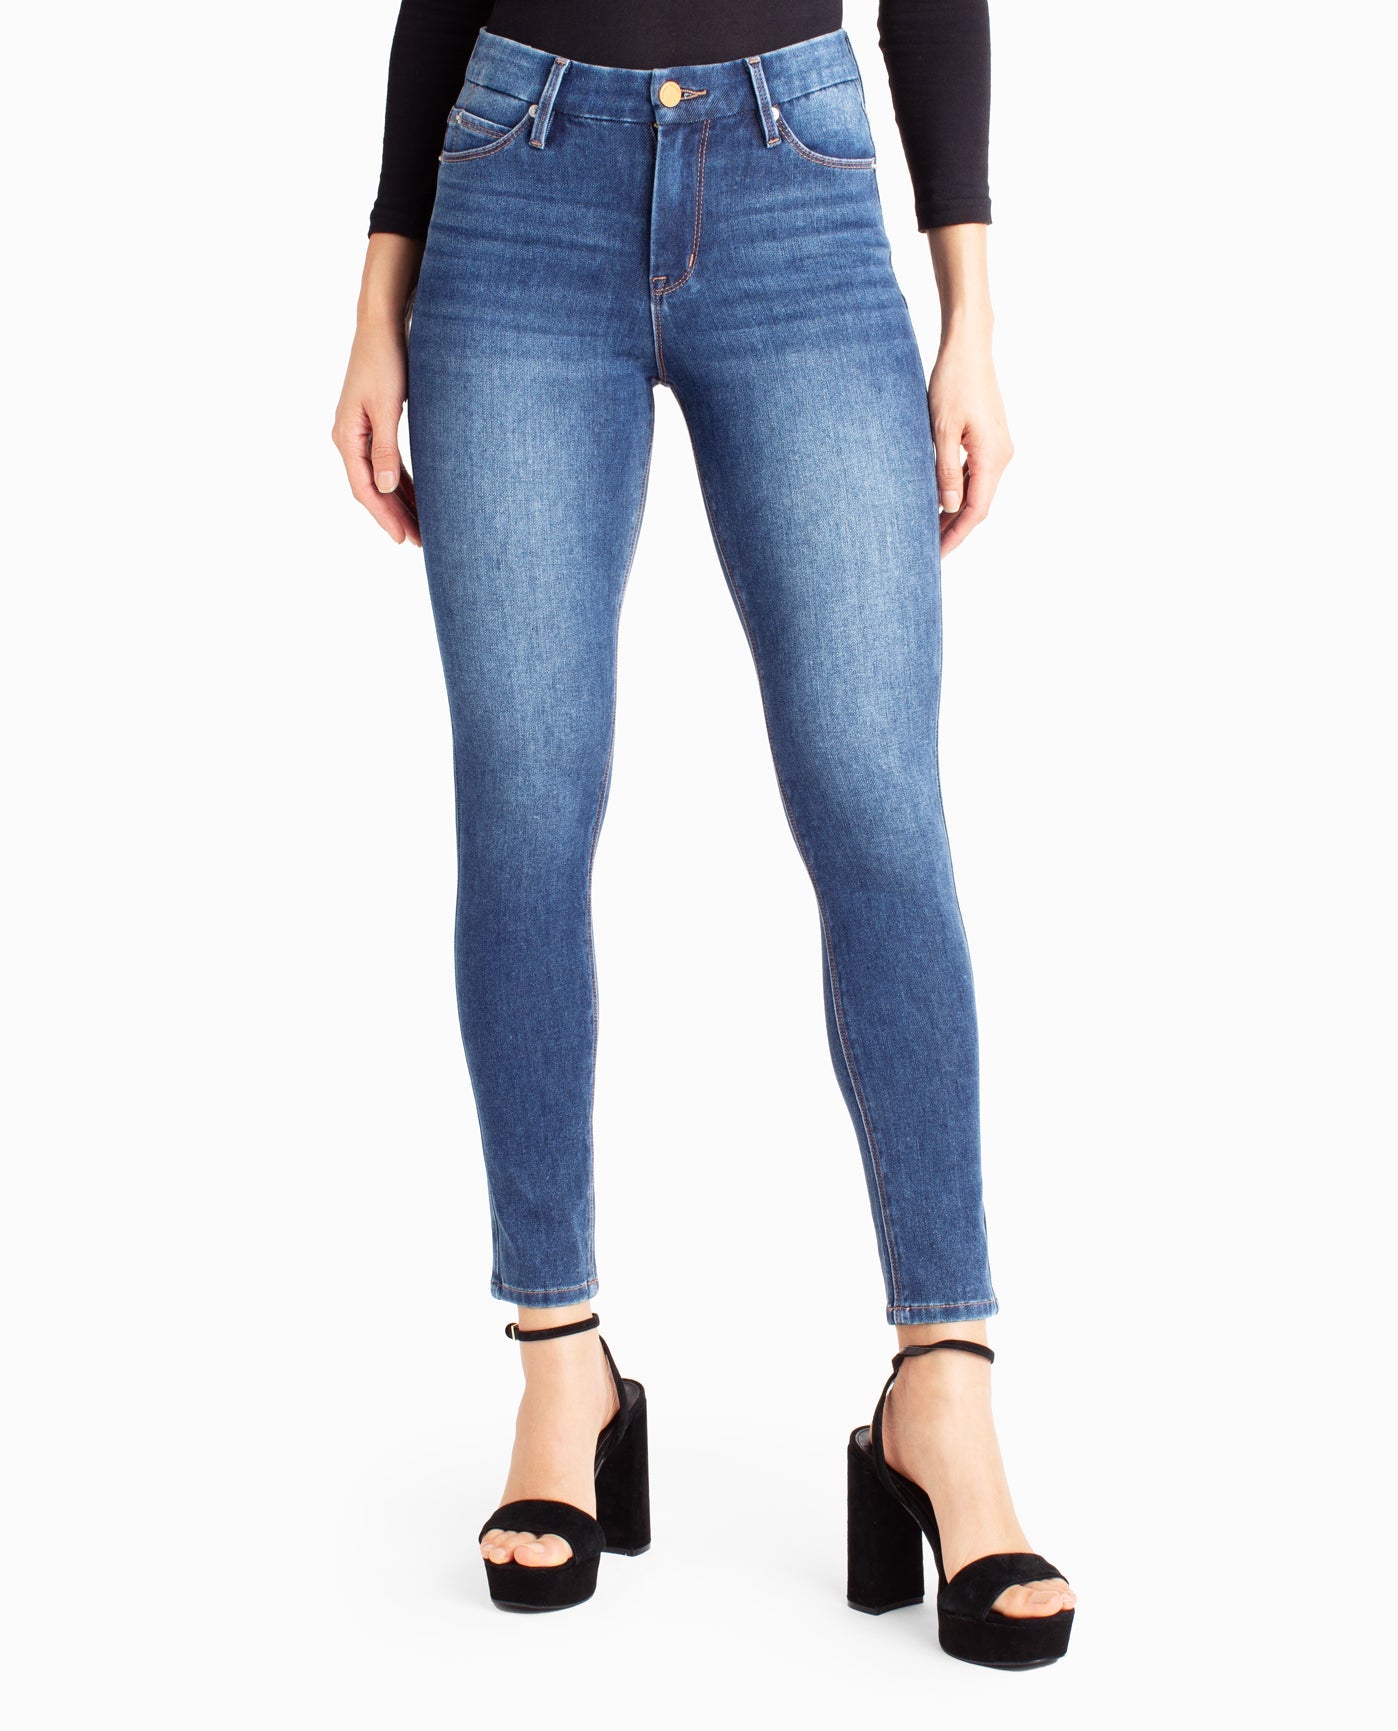 Nicolette shapewear jeans, Jeans